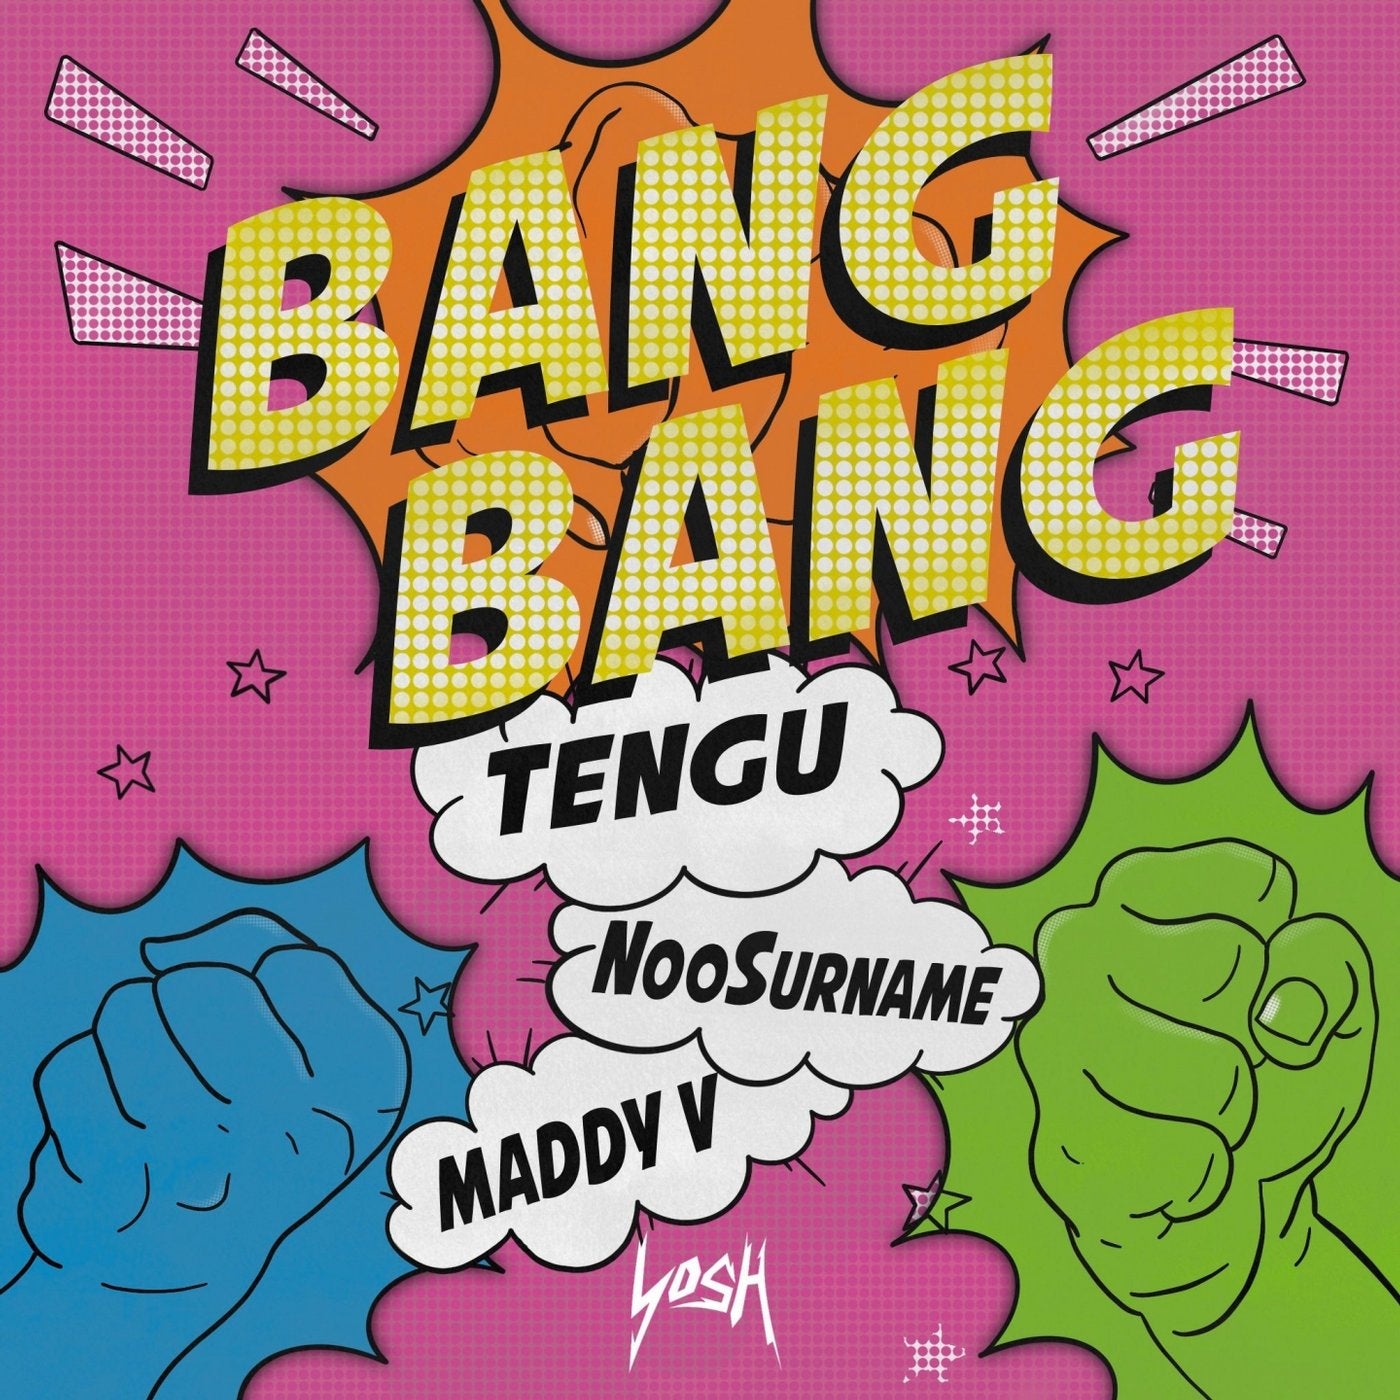 Blink bang bang. Ban ban. Bang! Альбомы. Bang Bang текст. V Bangs.